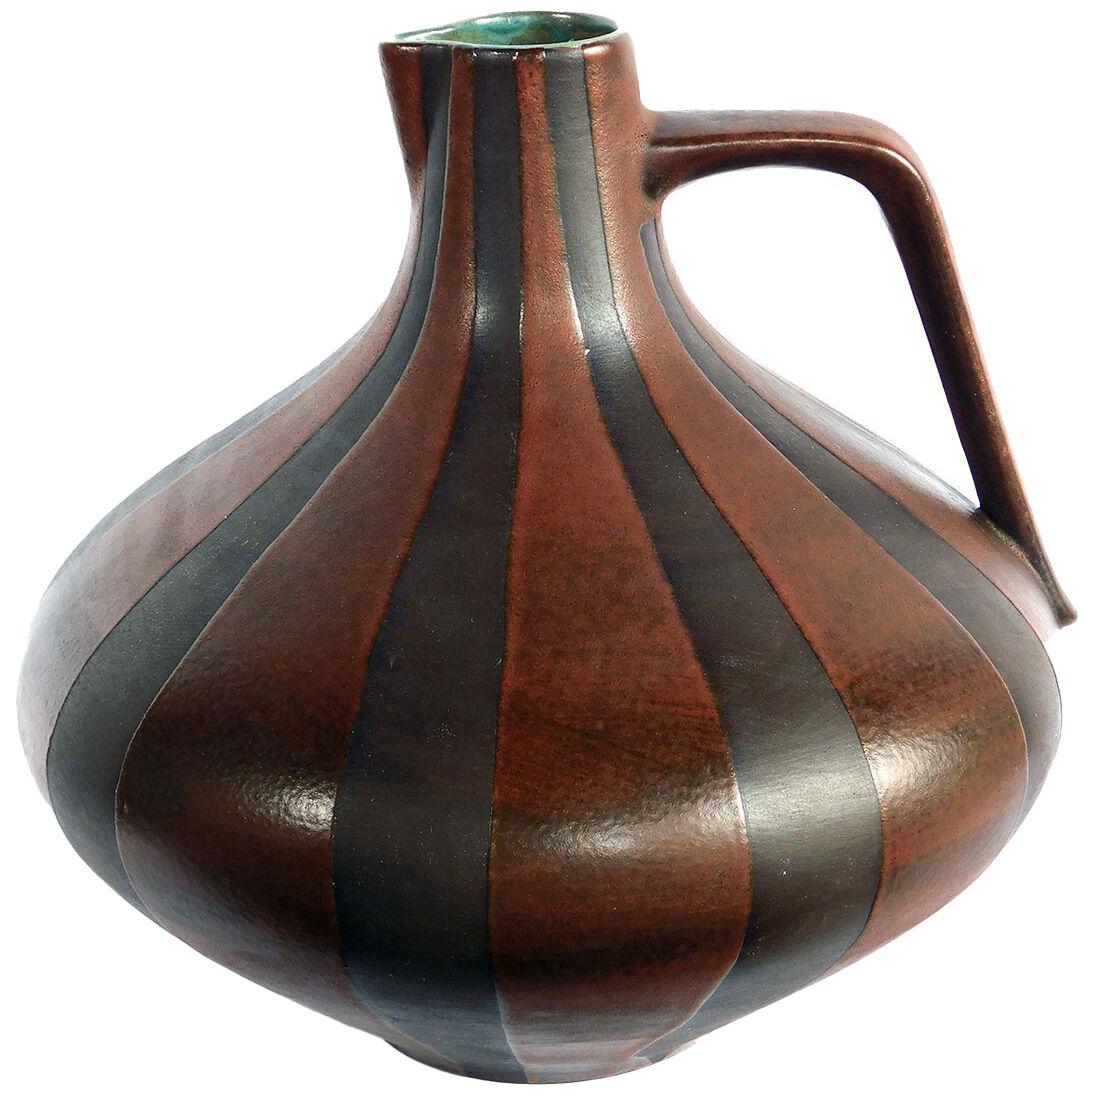 1960's Ceramano pitcher with dolomit glaze